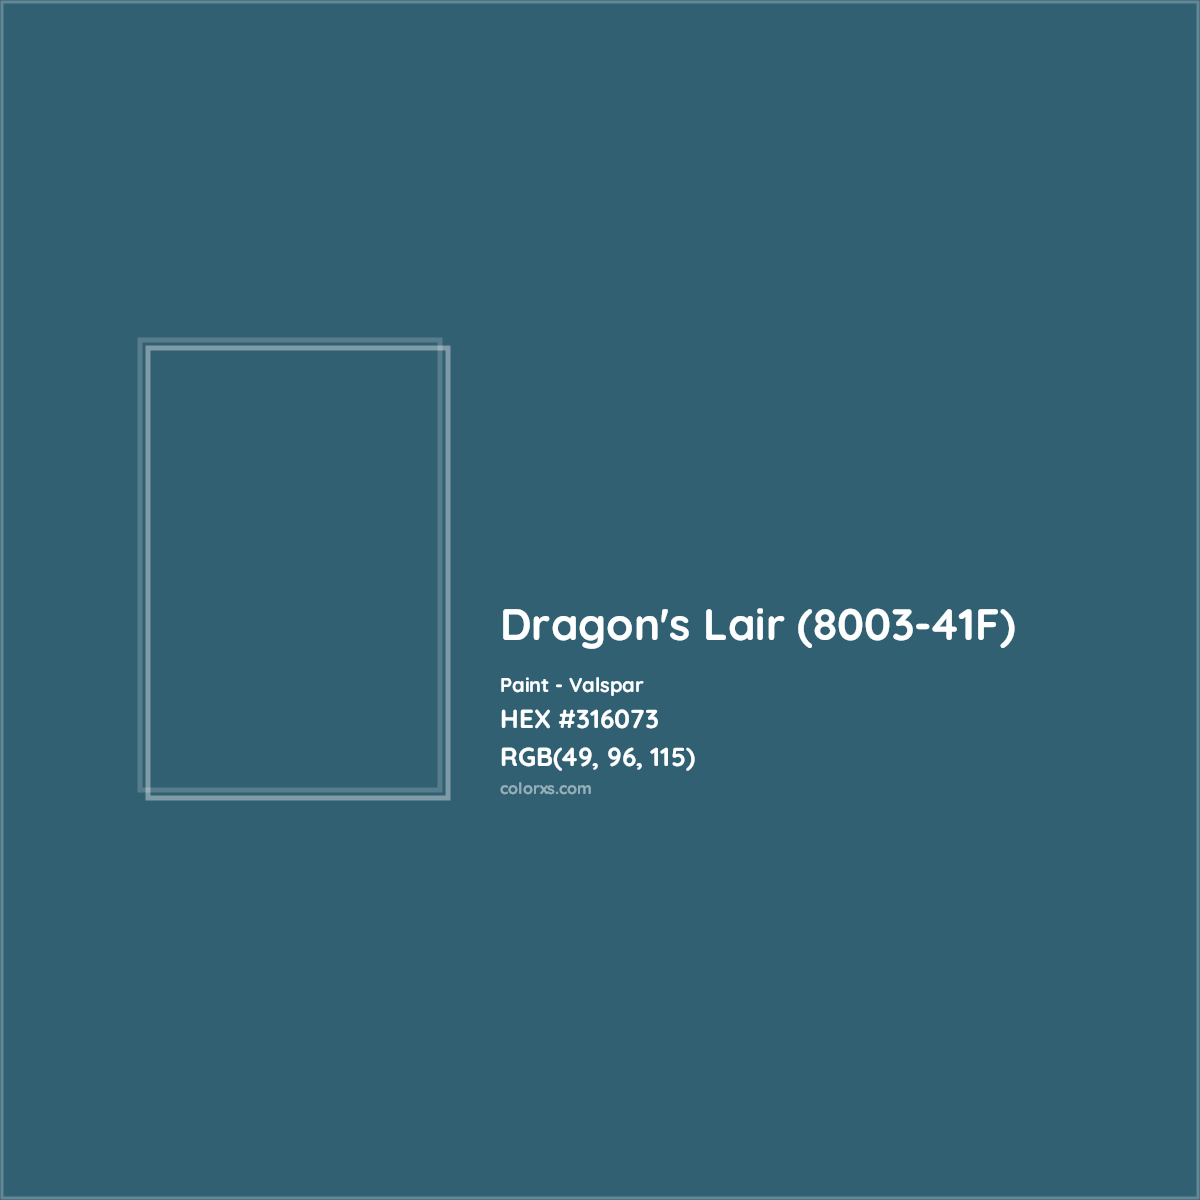 HEX #316073 Dragon's Lair (8003-41F) Paint Valspar - Color Code